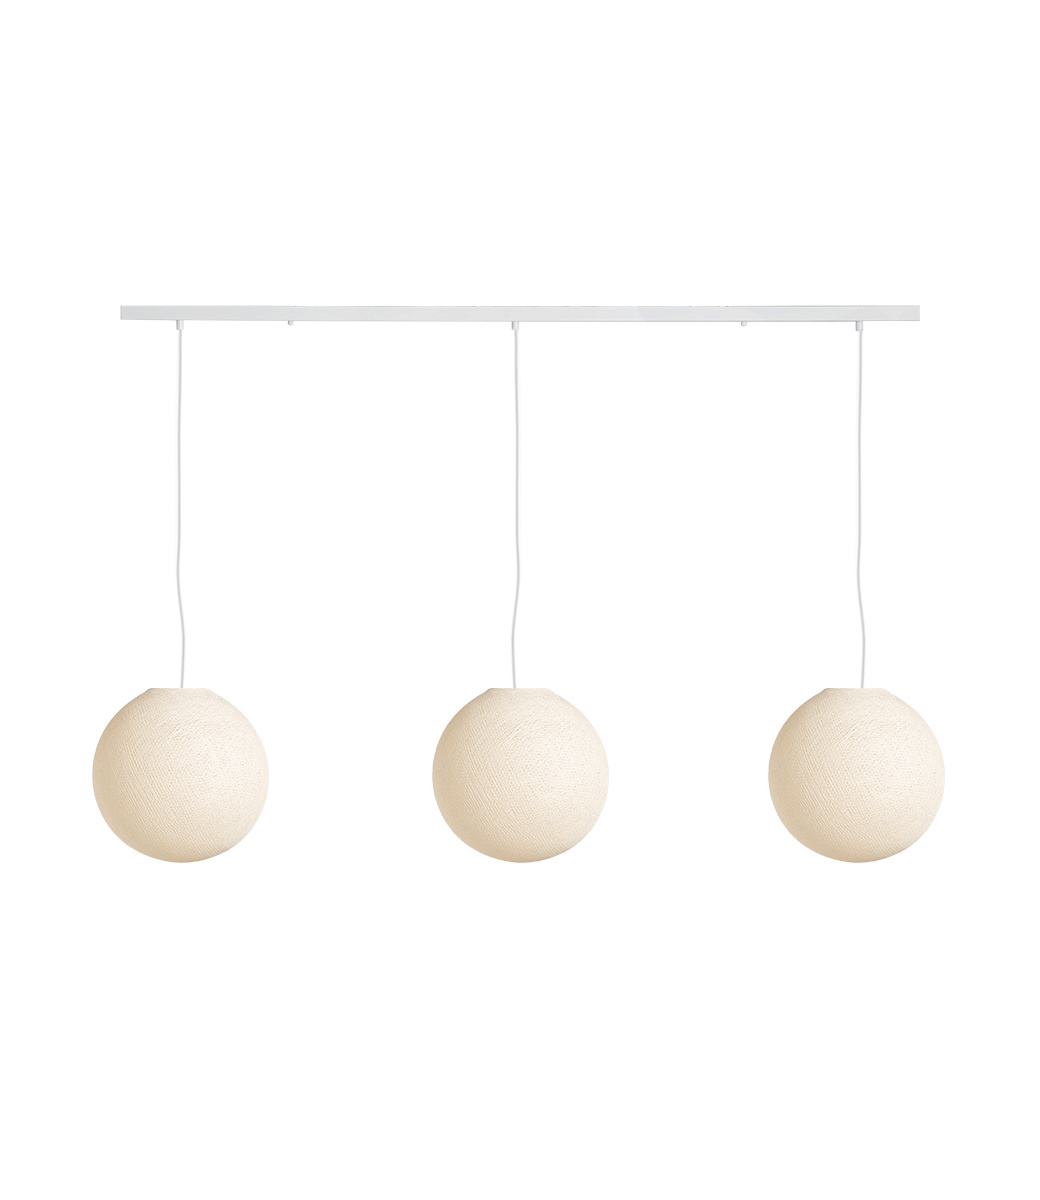 Cotton Ball Lights Drievoudige hanglamp balk - Shell